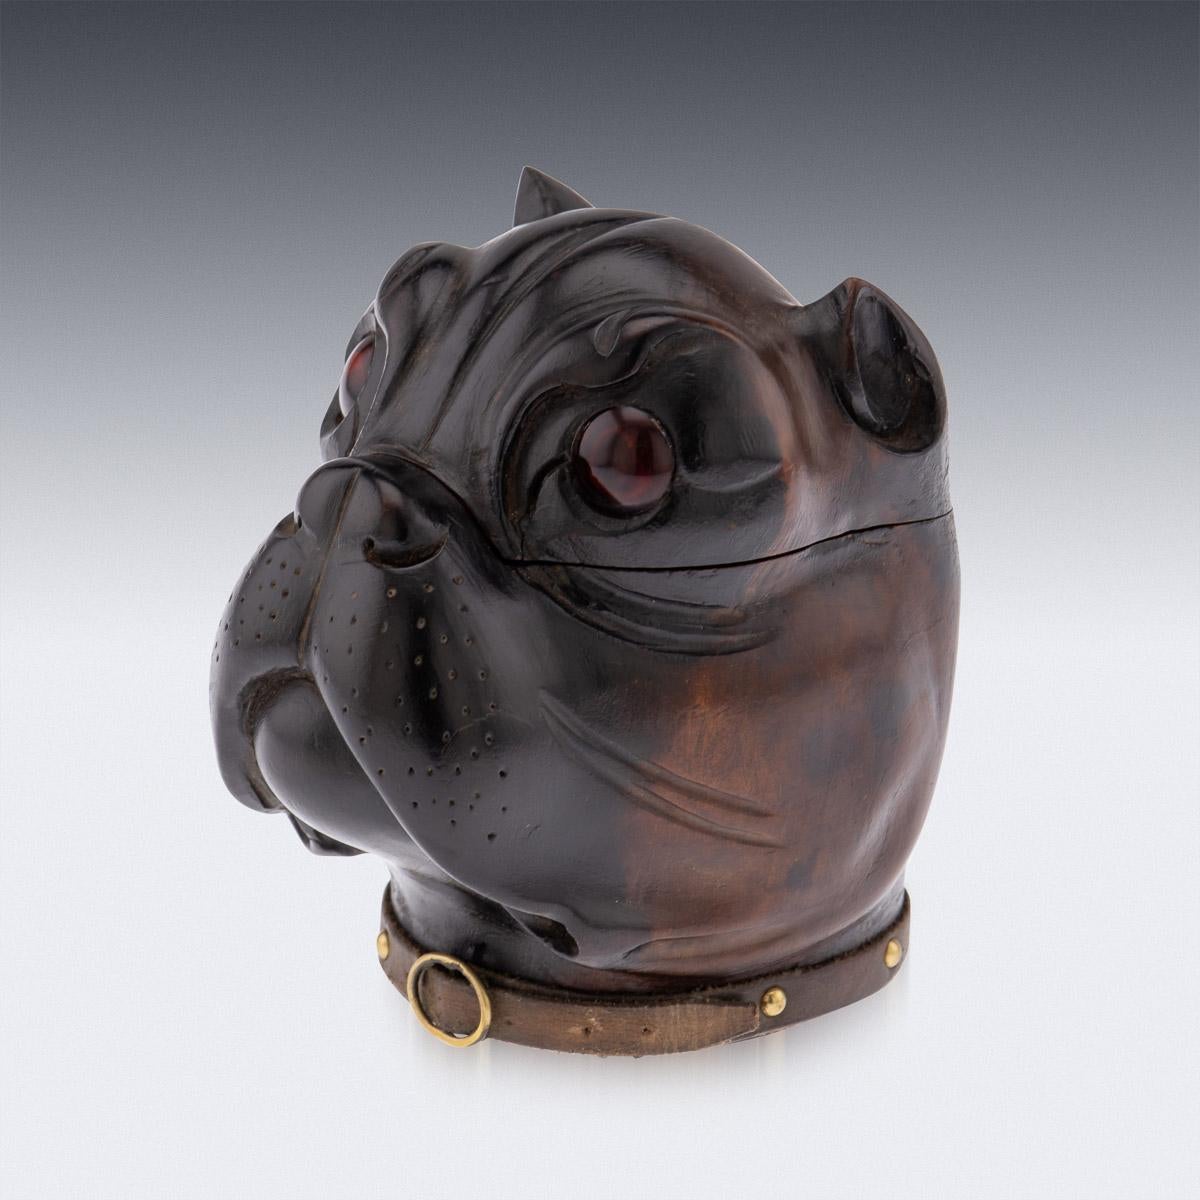 Viktorianisches Lignum-vitae-Tintenfass aus dem 19. Jahrhundert, modelliert als Kopf einer Bulldogge mit realistischen, roten Glasaugen, originales Lederhalsband mit Kupferschnalle. Der Kopf ist mit einem Scharnier versehen und lässt sich öffnen, um